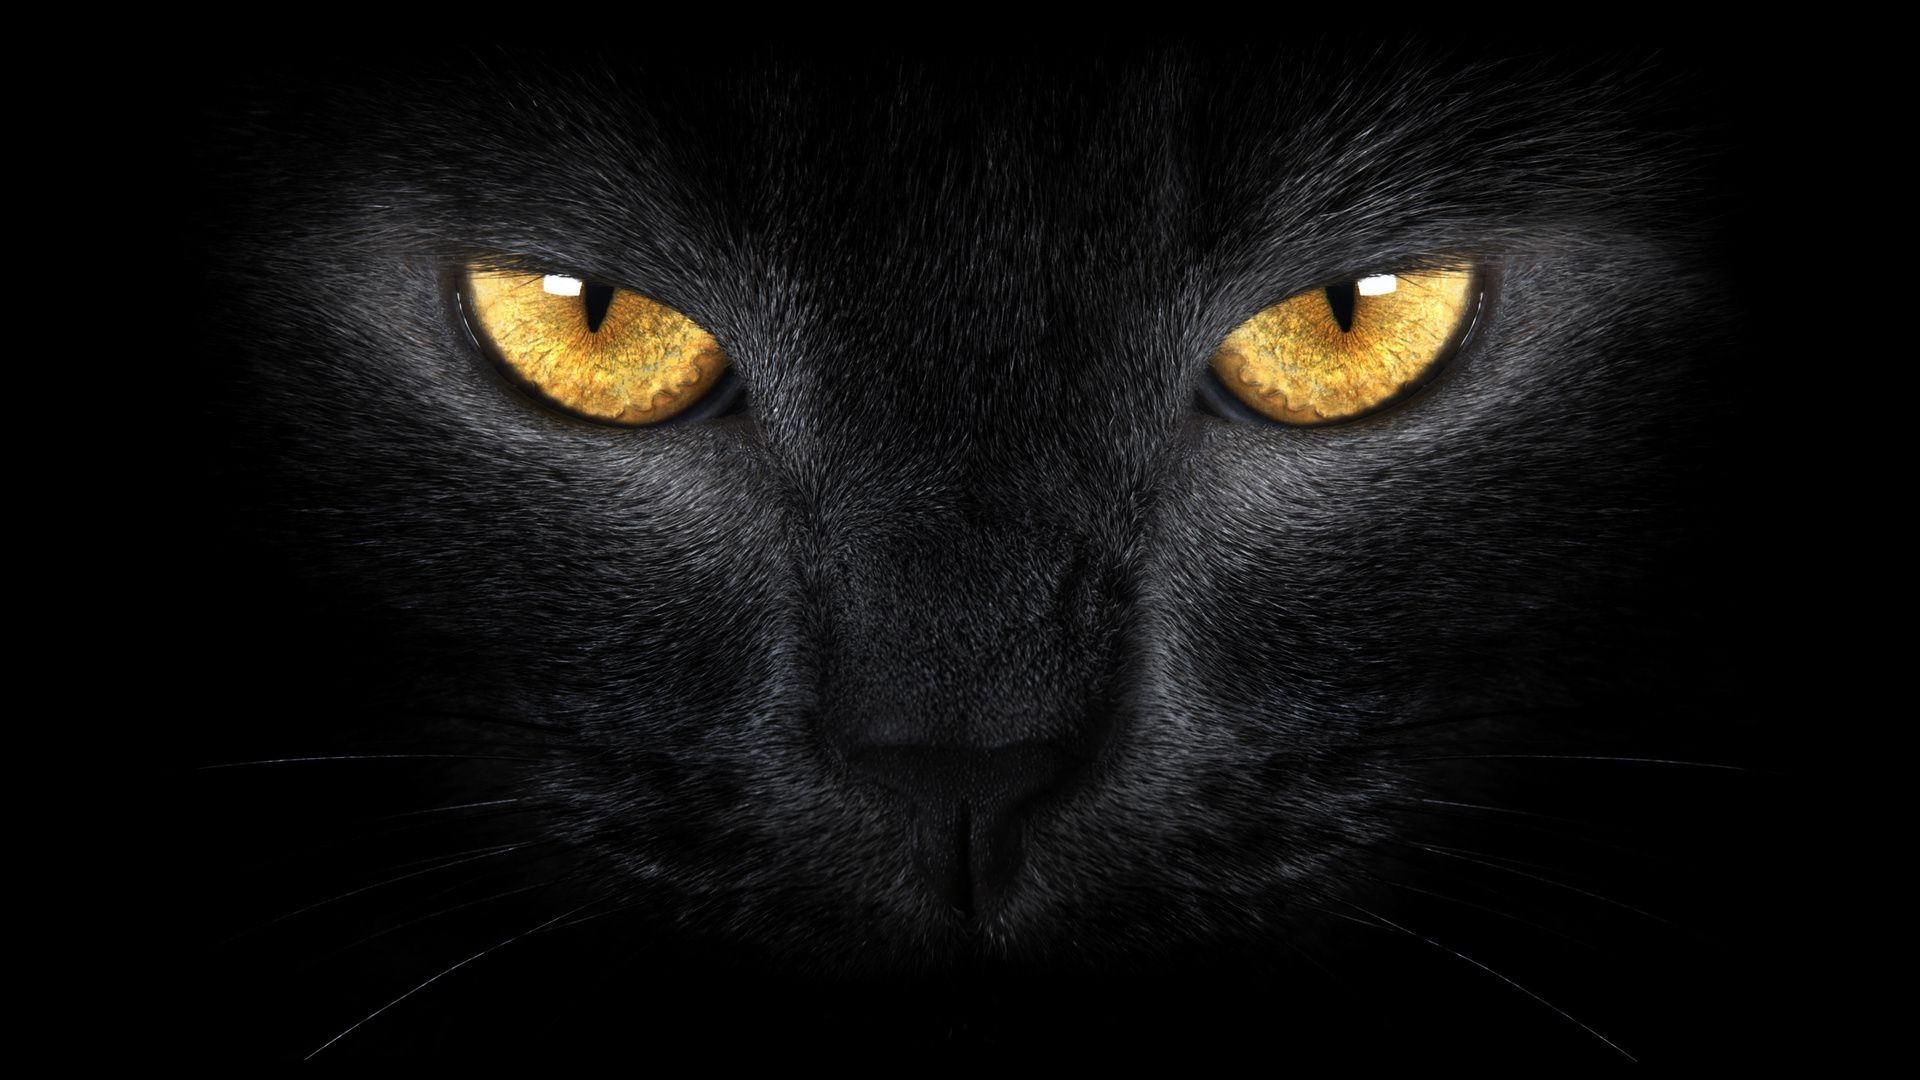 кошки кошка портрет глаз один монохромный животное темный котенок милые глядя мех пэт млекопитающее лицо просмотр